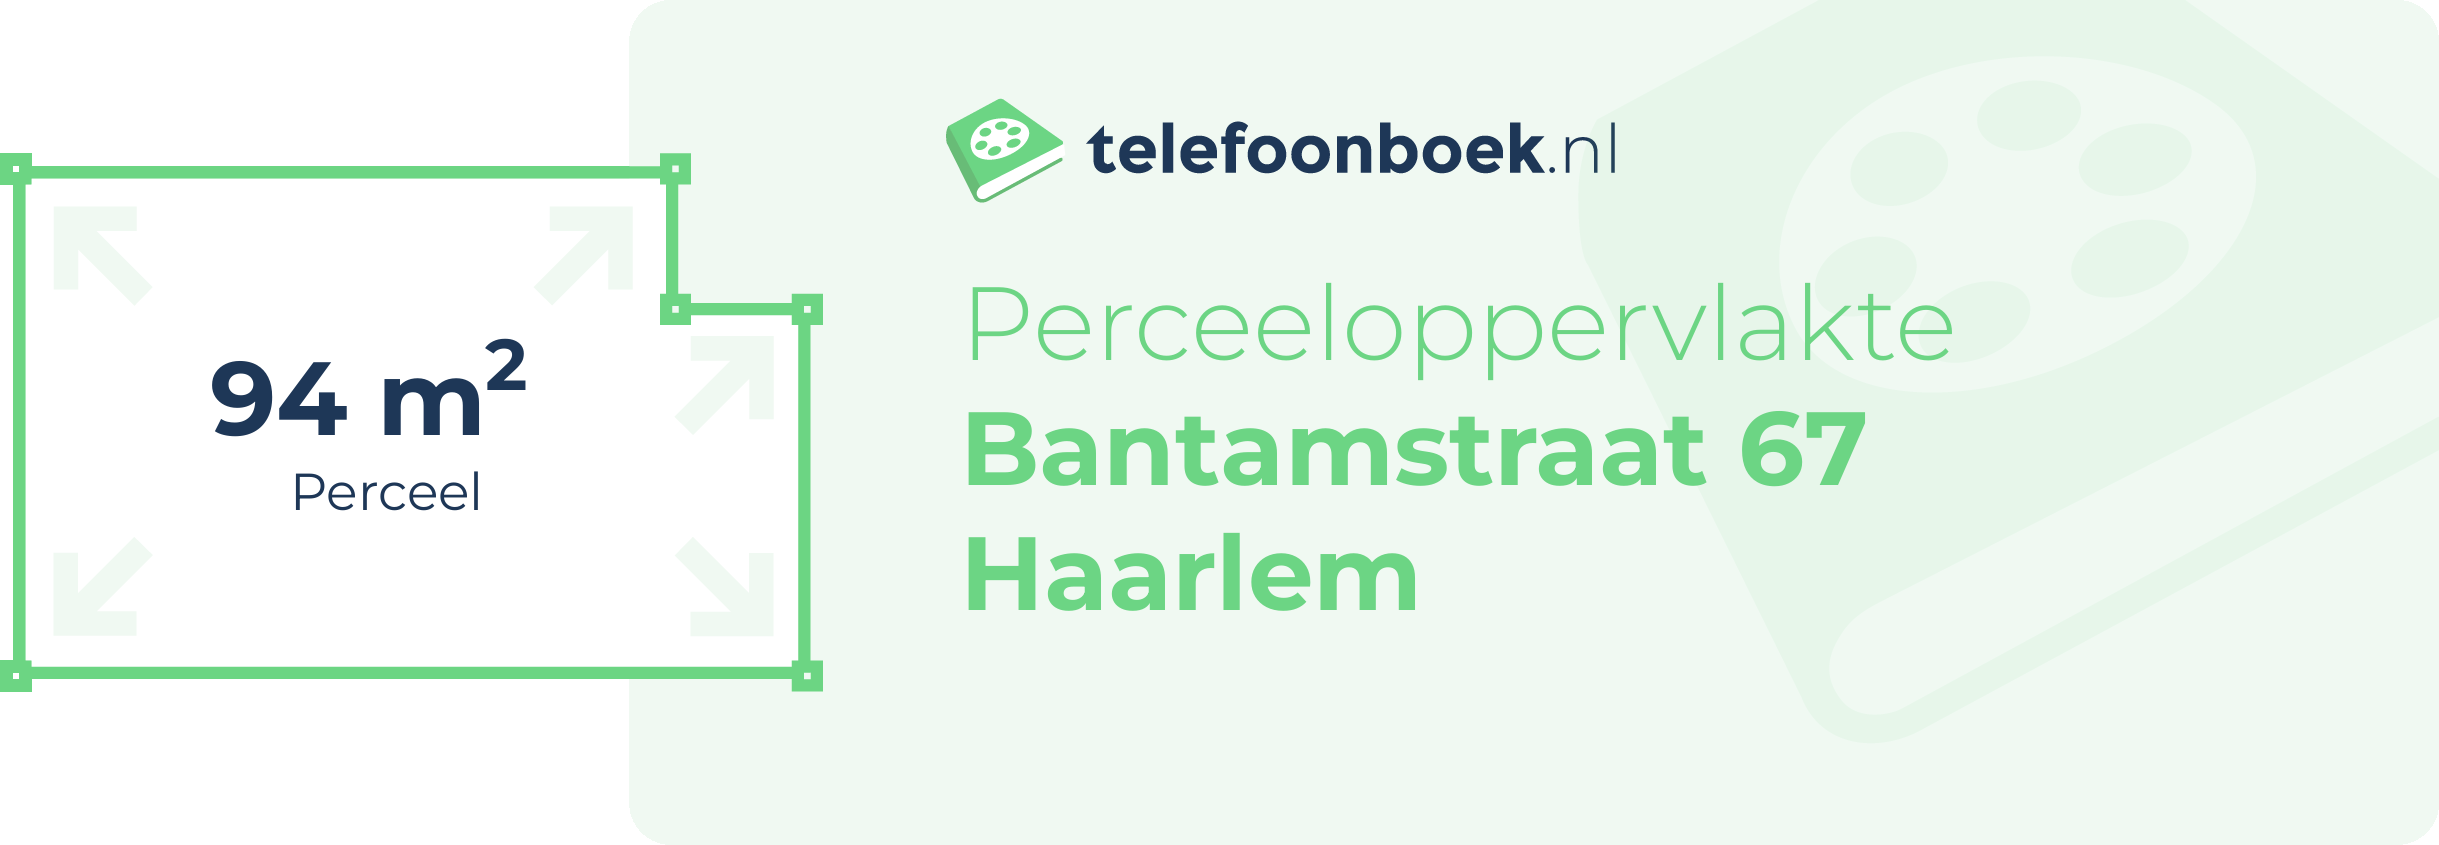 Perceeloppervlakte Bantamstraat 67 Haarlem